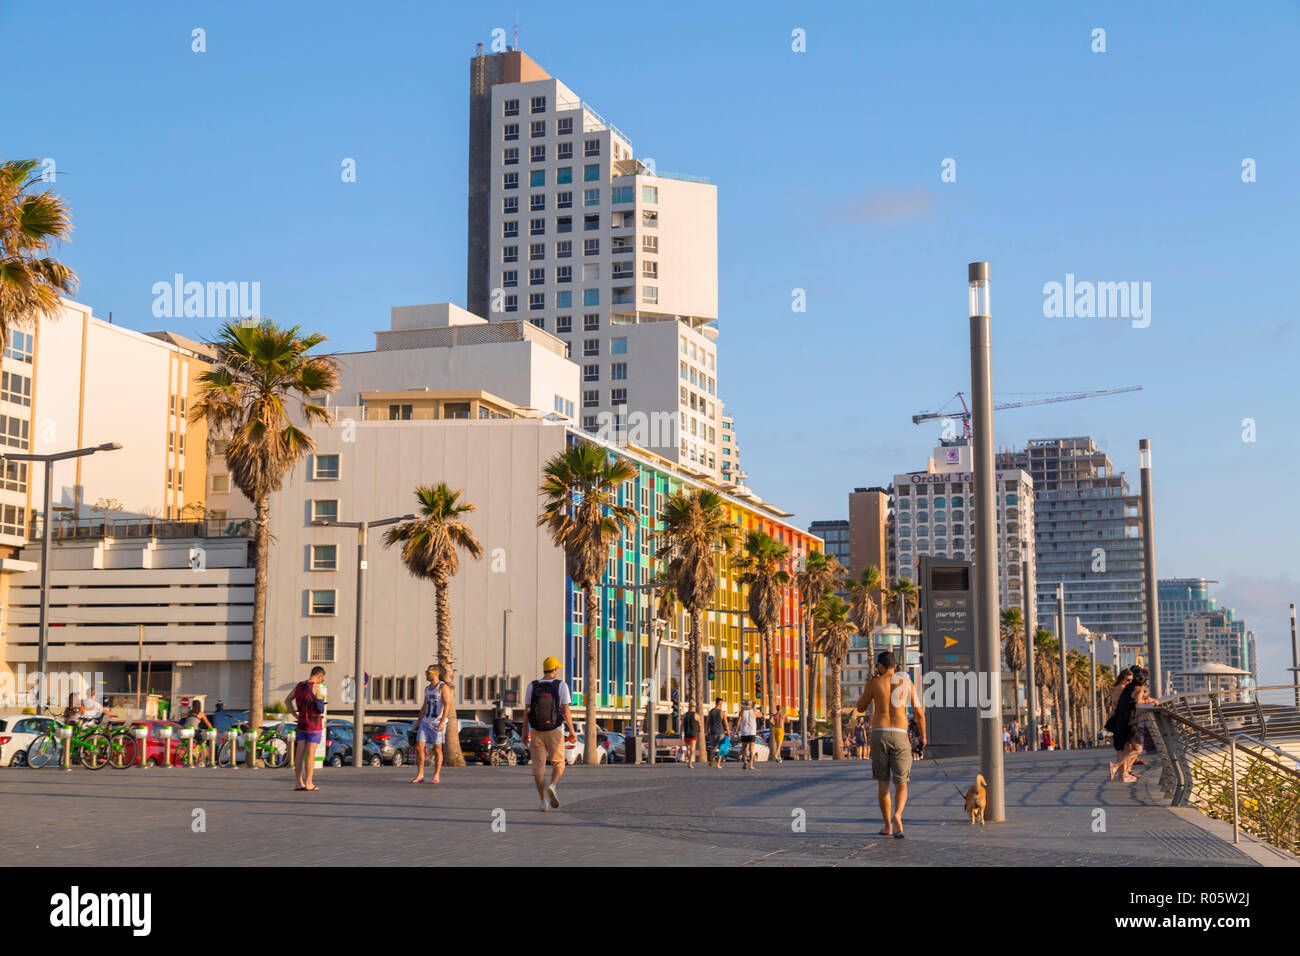 Tel Aviv-Jaffa, Israel - 6 Juni, 2018: Blick von der Strandpromenade von Tel Aviv mit Hotels, Residenzen und Menschen rund um Walking und Freibad Stockfoto